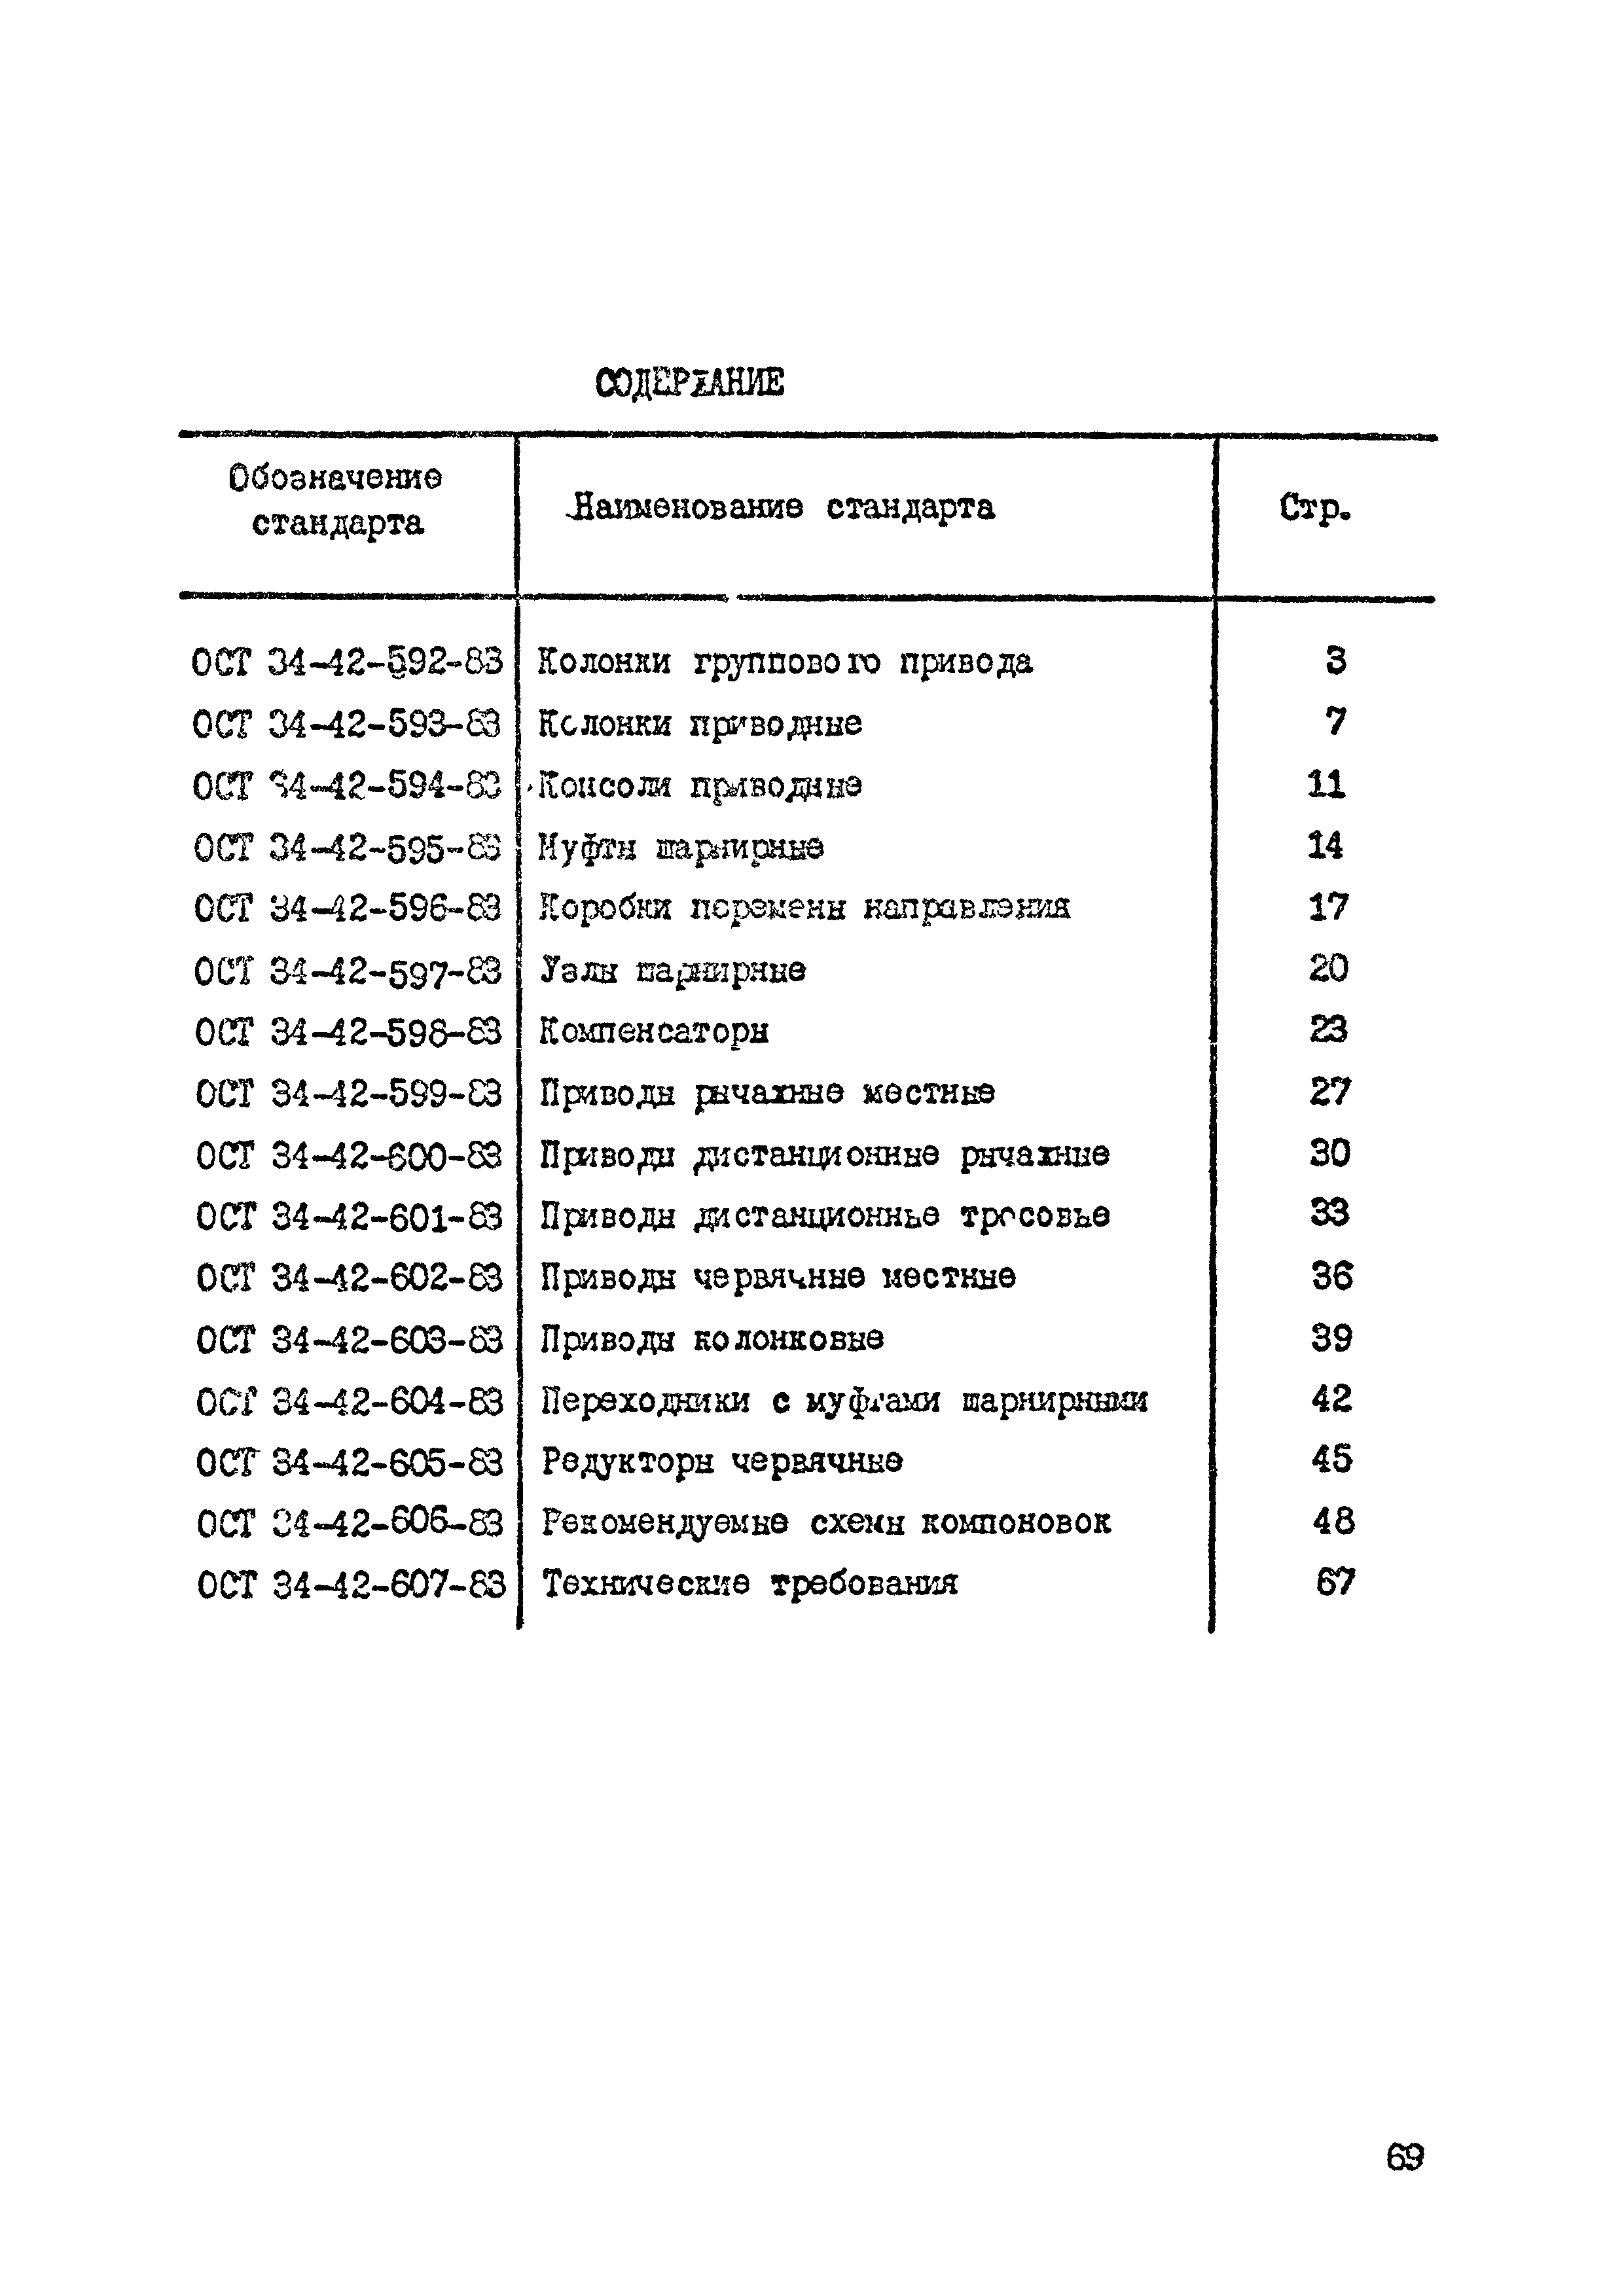 ОСТ 34-42-600-83